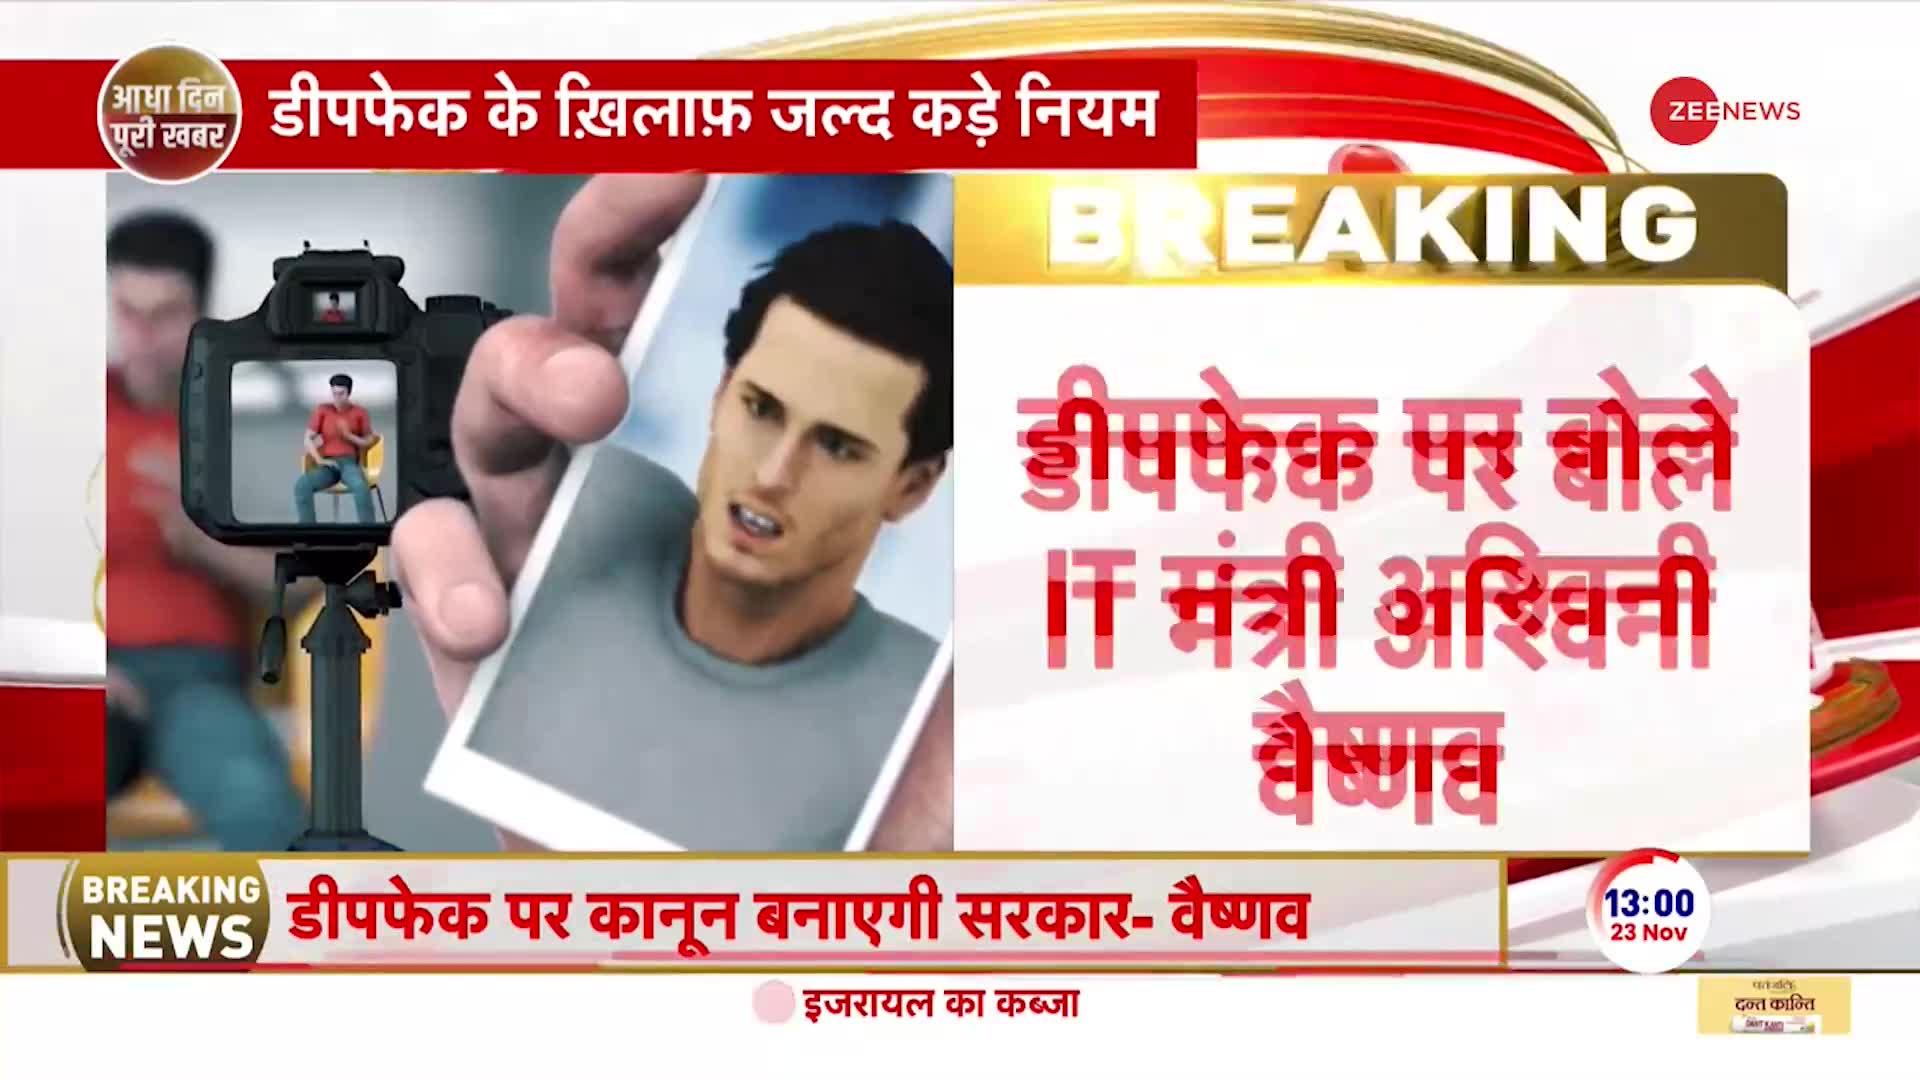 BREAKING NEWS: डीपफेक वीडियो पर IT मंत्री अश्विनी वैष्णव का बयान, कंटेट बनाने वालों पर होगा एक्शन